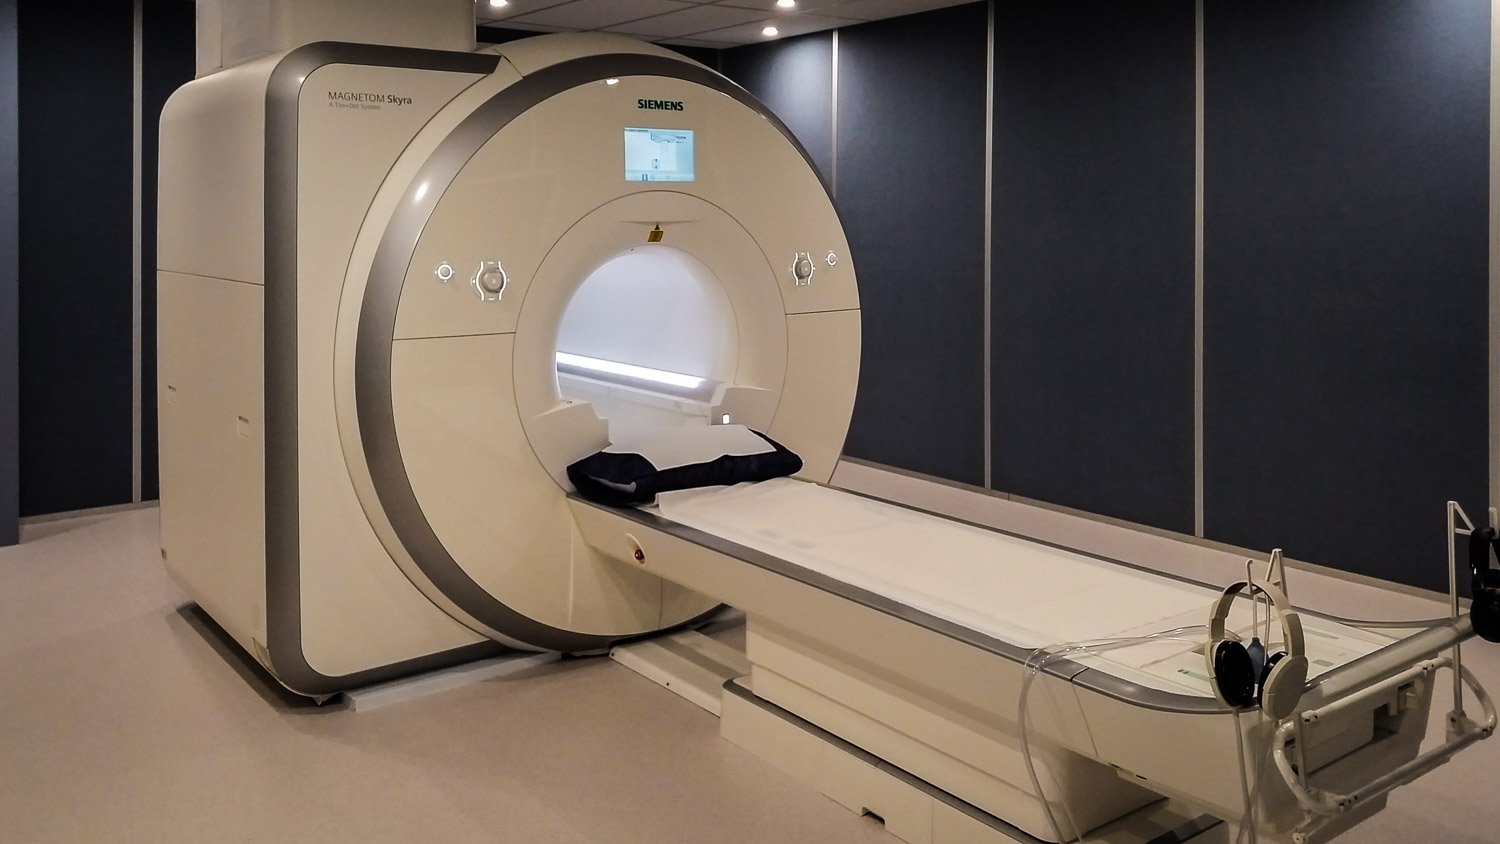 State of the art MRI machine